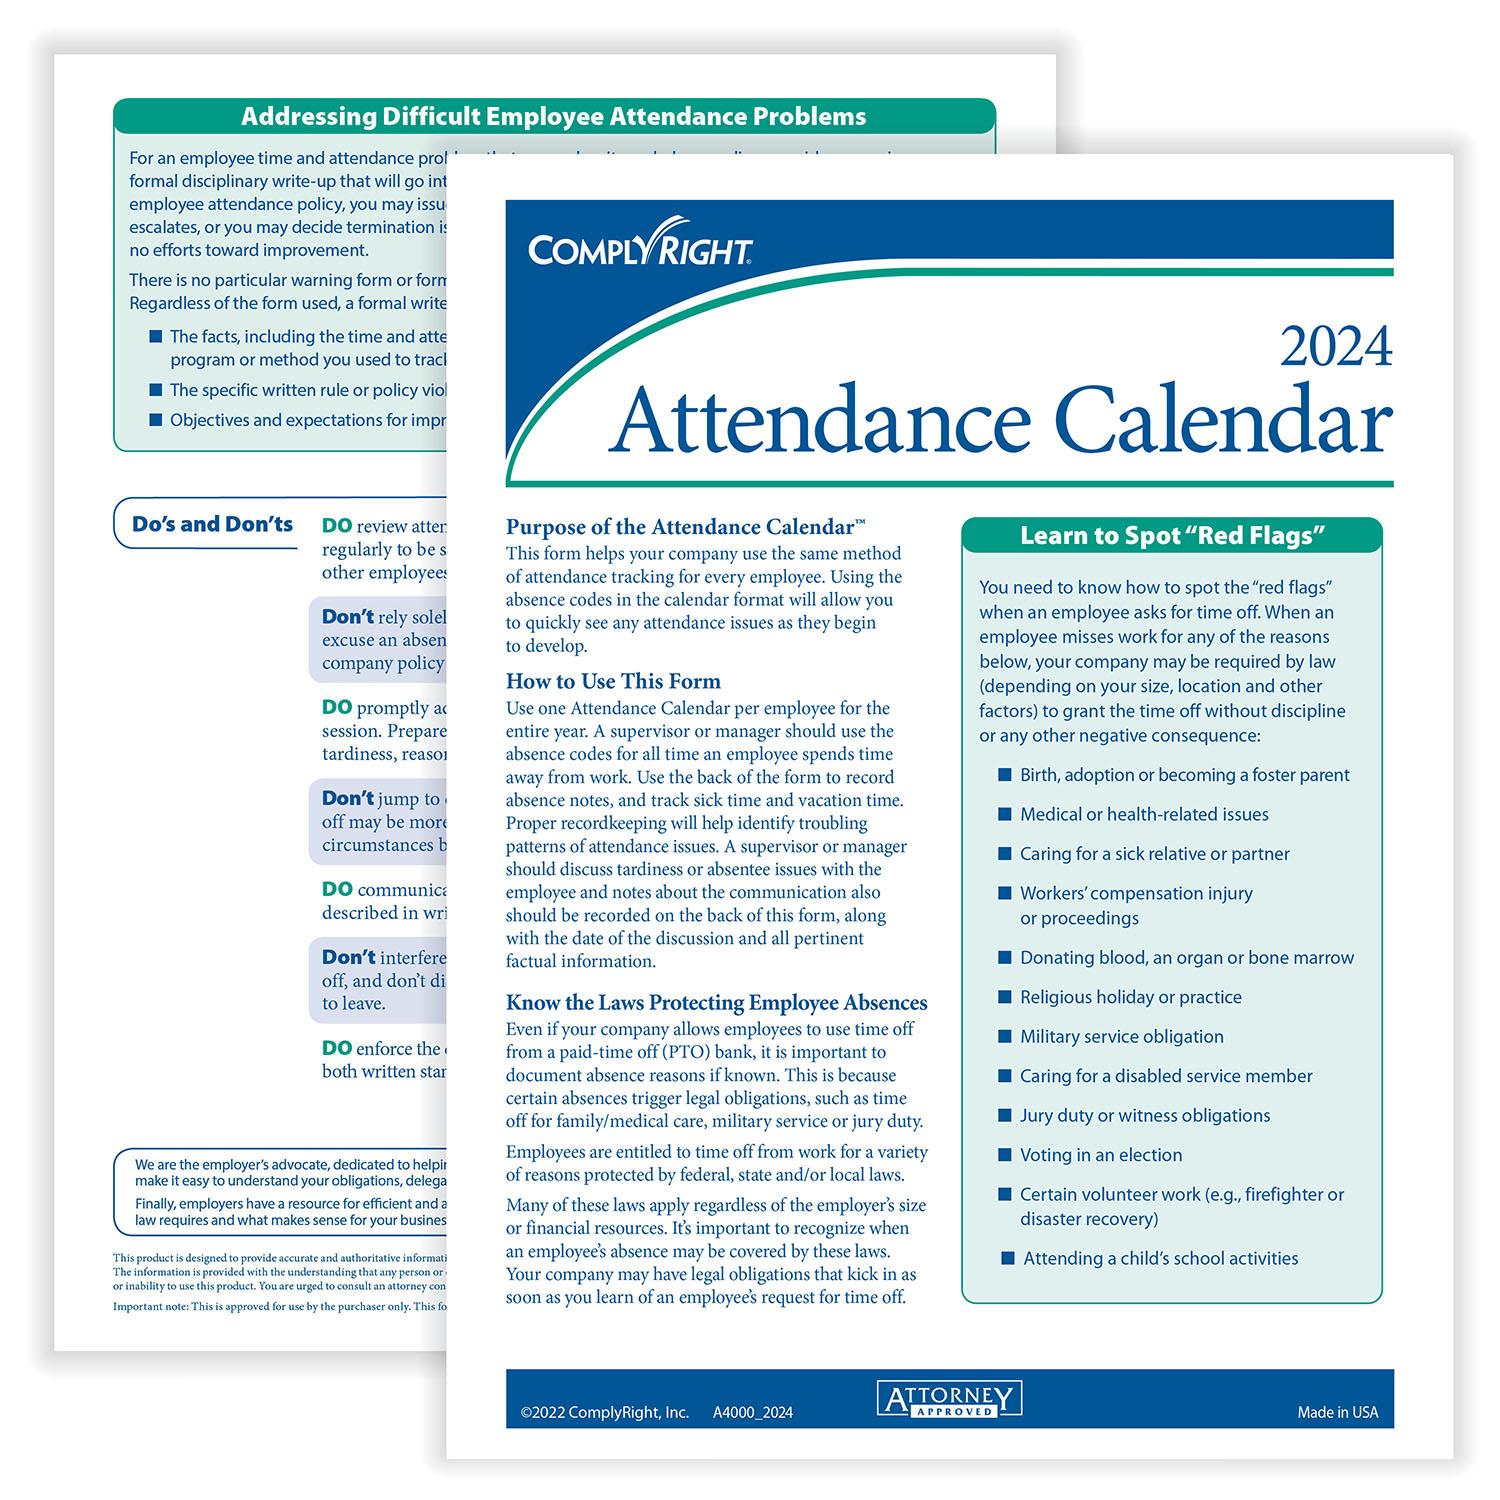 ComplyRightDealer 2024 Attendance Calendar Card, Pack of 50